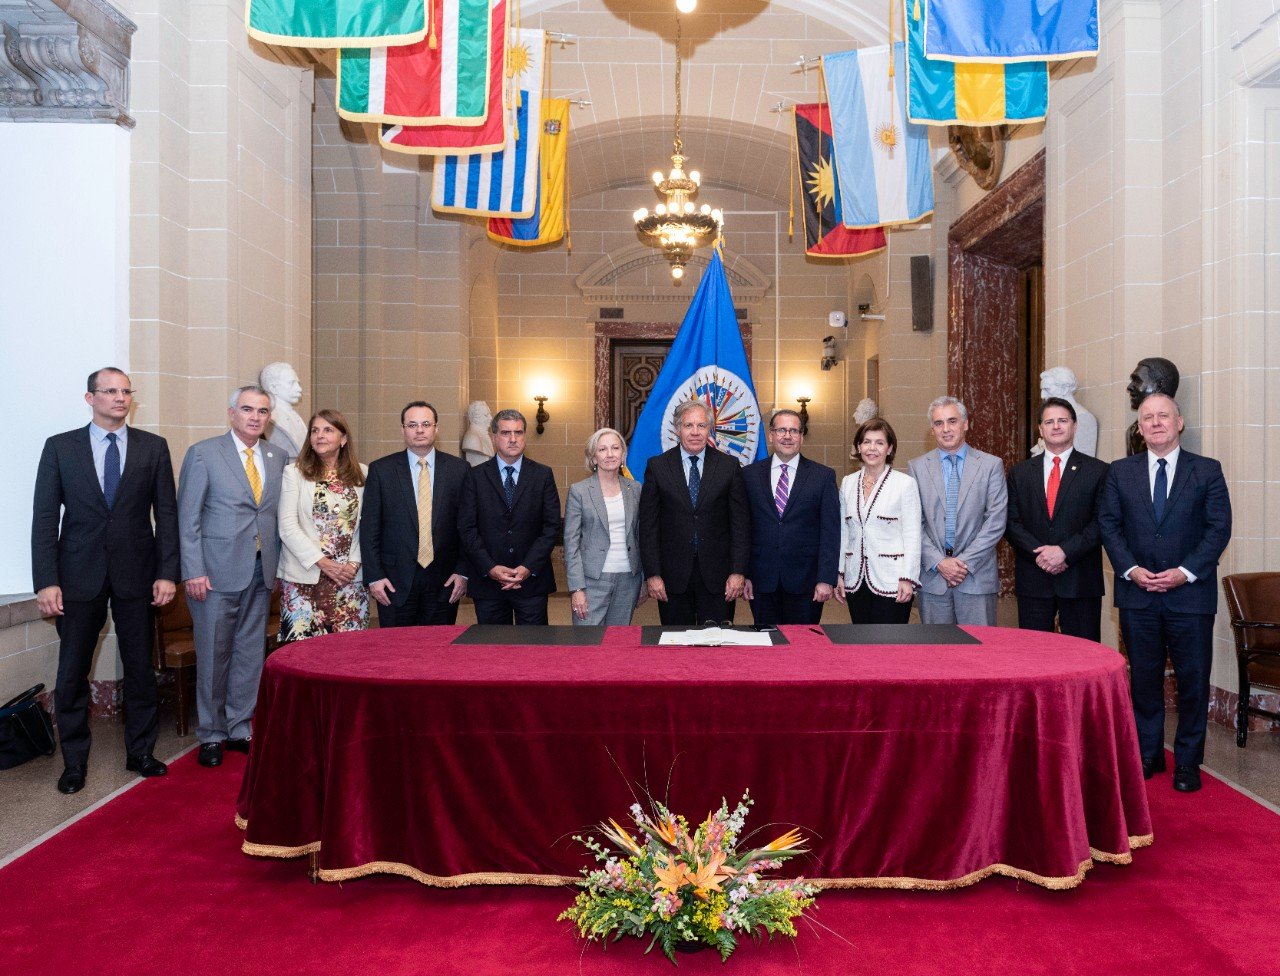 El Programa de las Naciones Unidas para el Desarrollo (PNUD) firmó un acuerdo de cooperación con la Organización de los Estados Americanos (OEA) para luchar contra la Corrupción en América Latina y el Caribe.